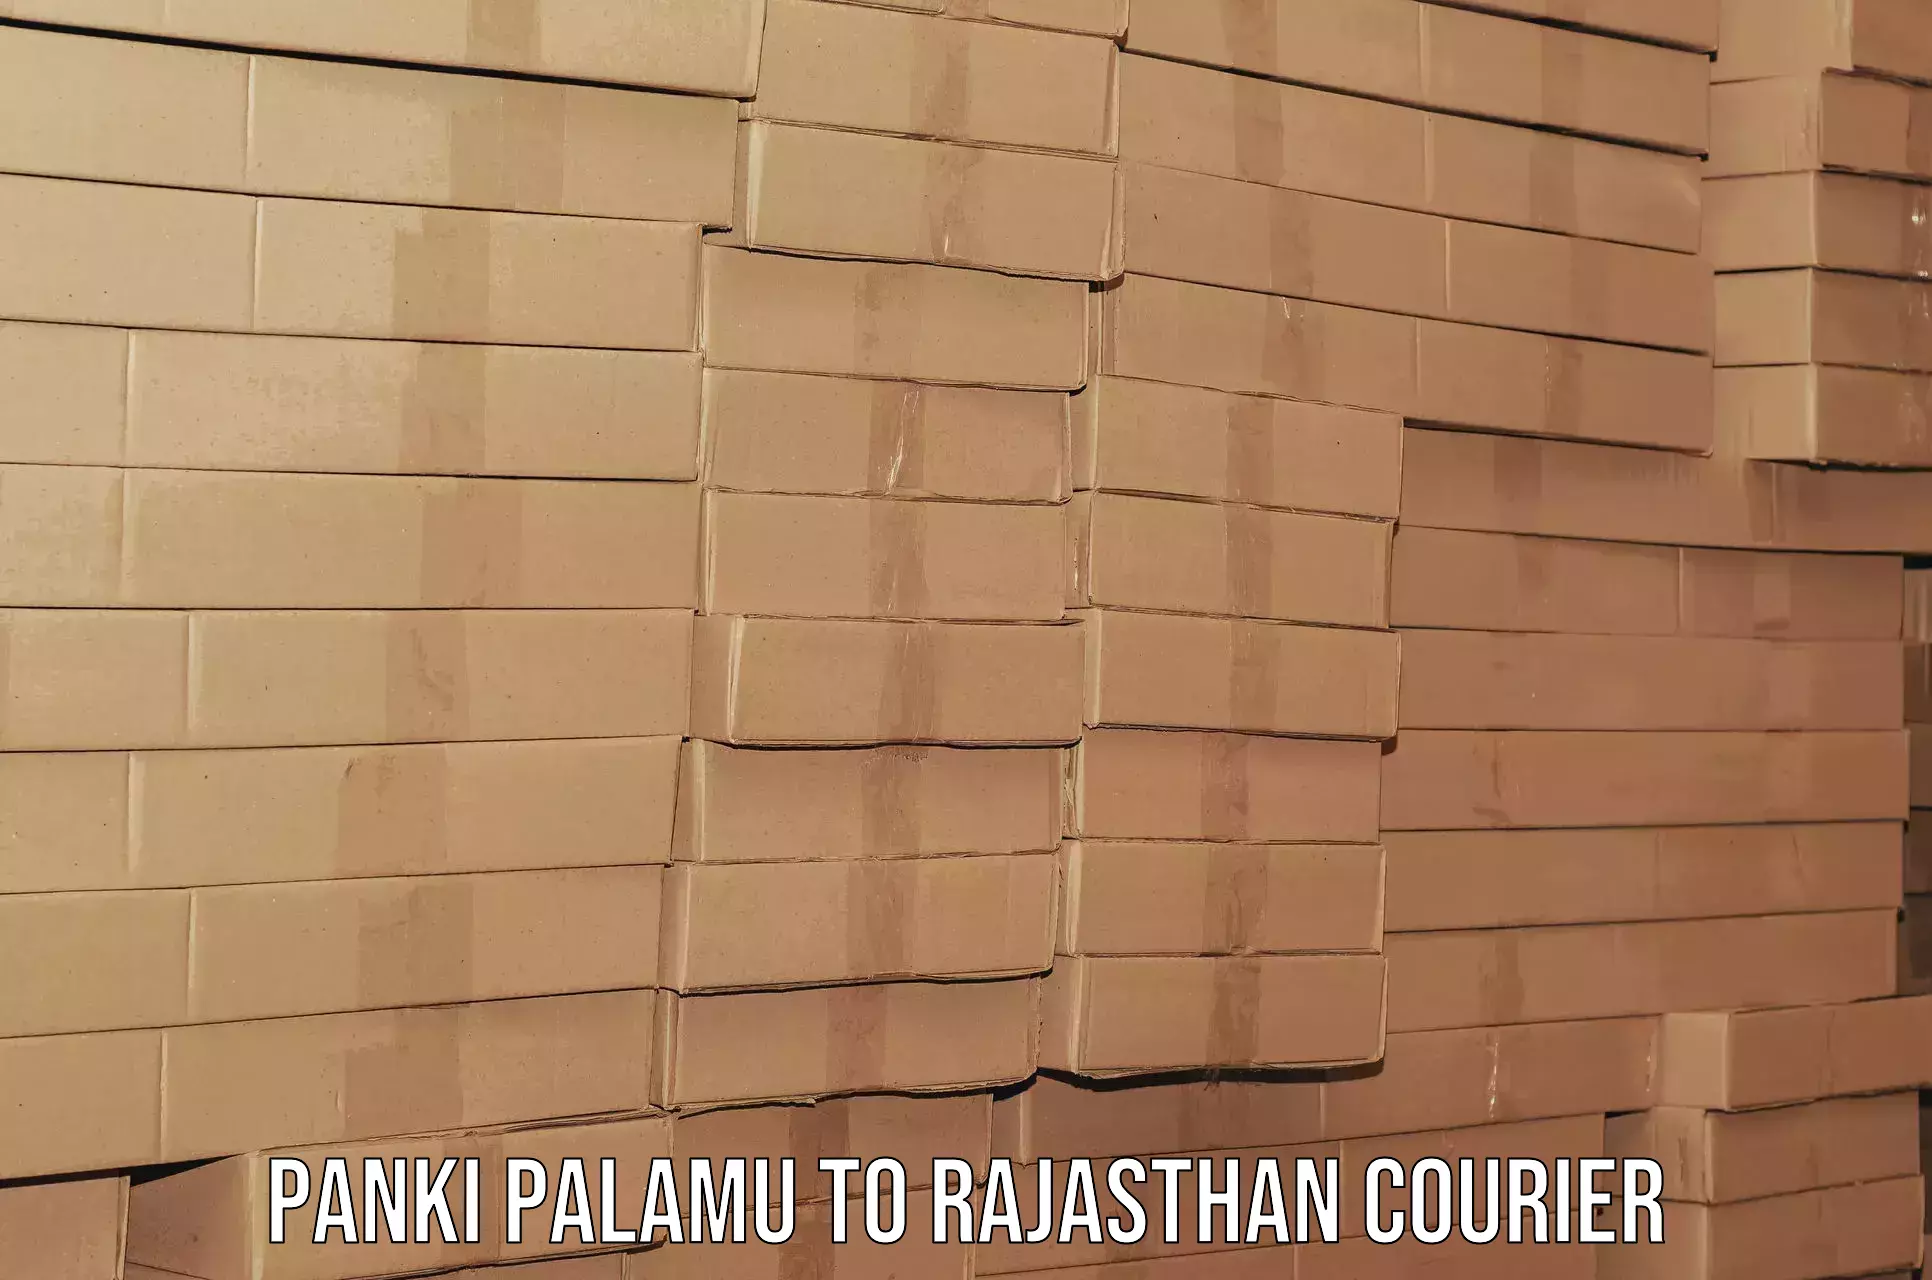 Skilled furniture transporters Panki Palamu to Gudha Gorji